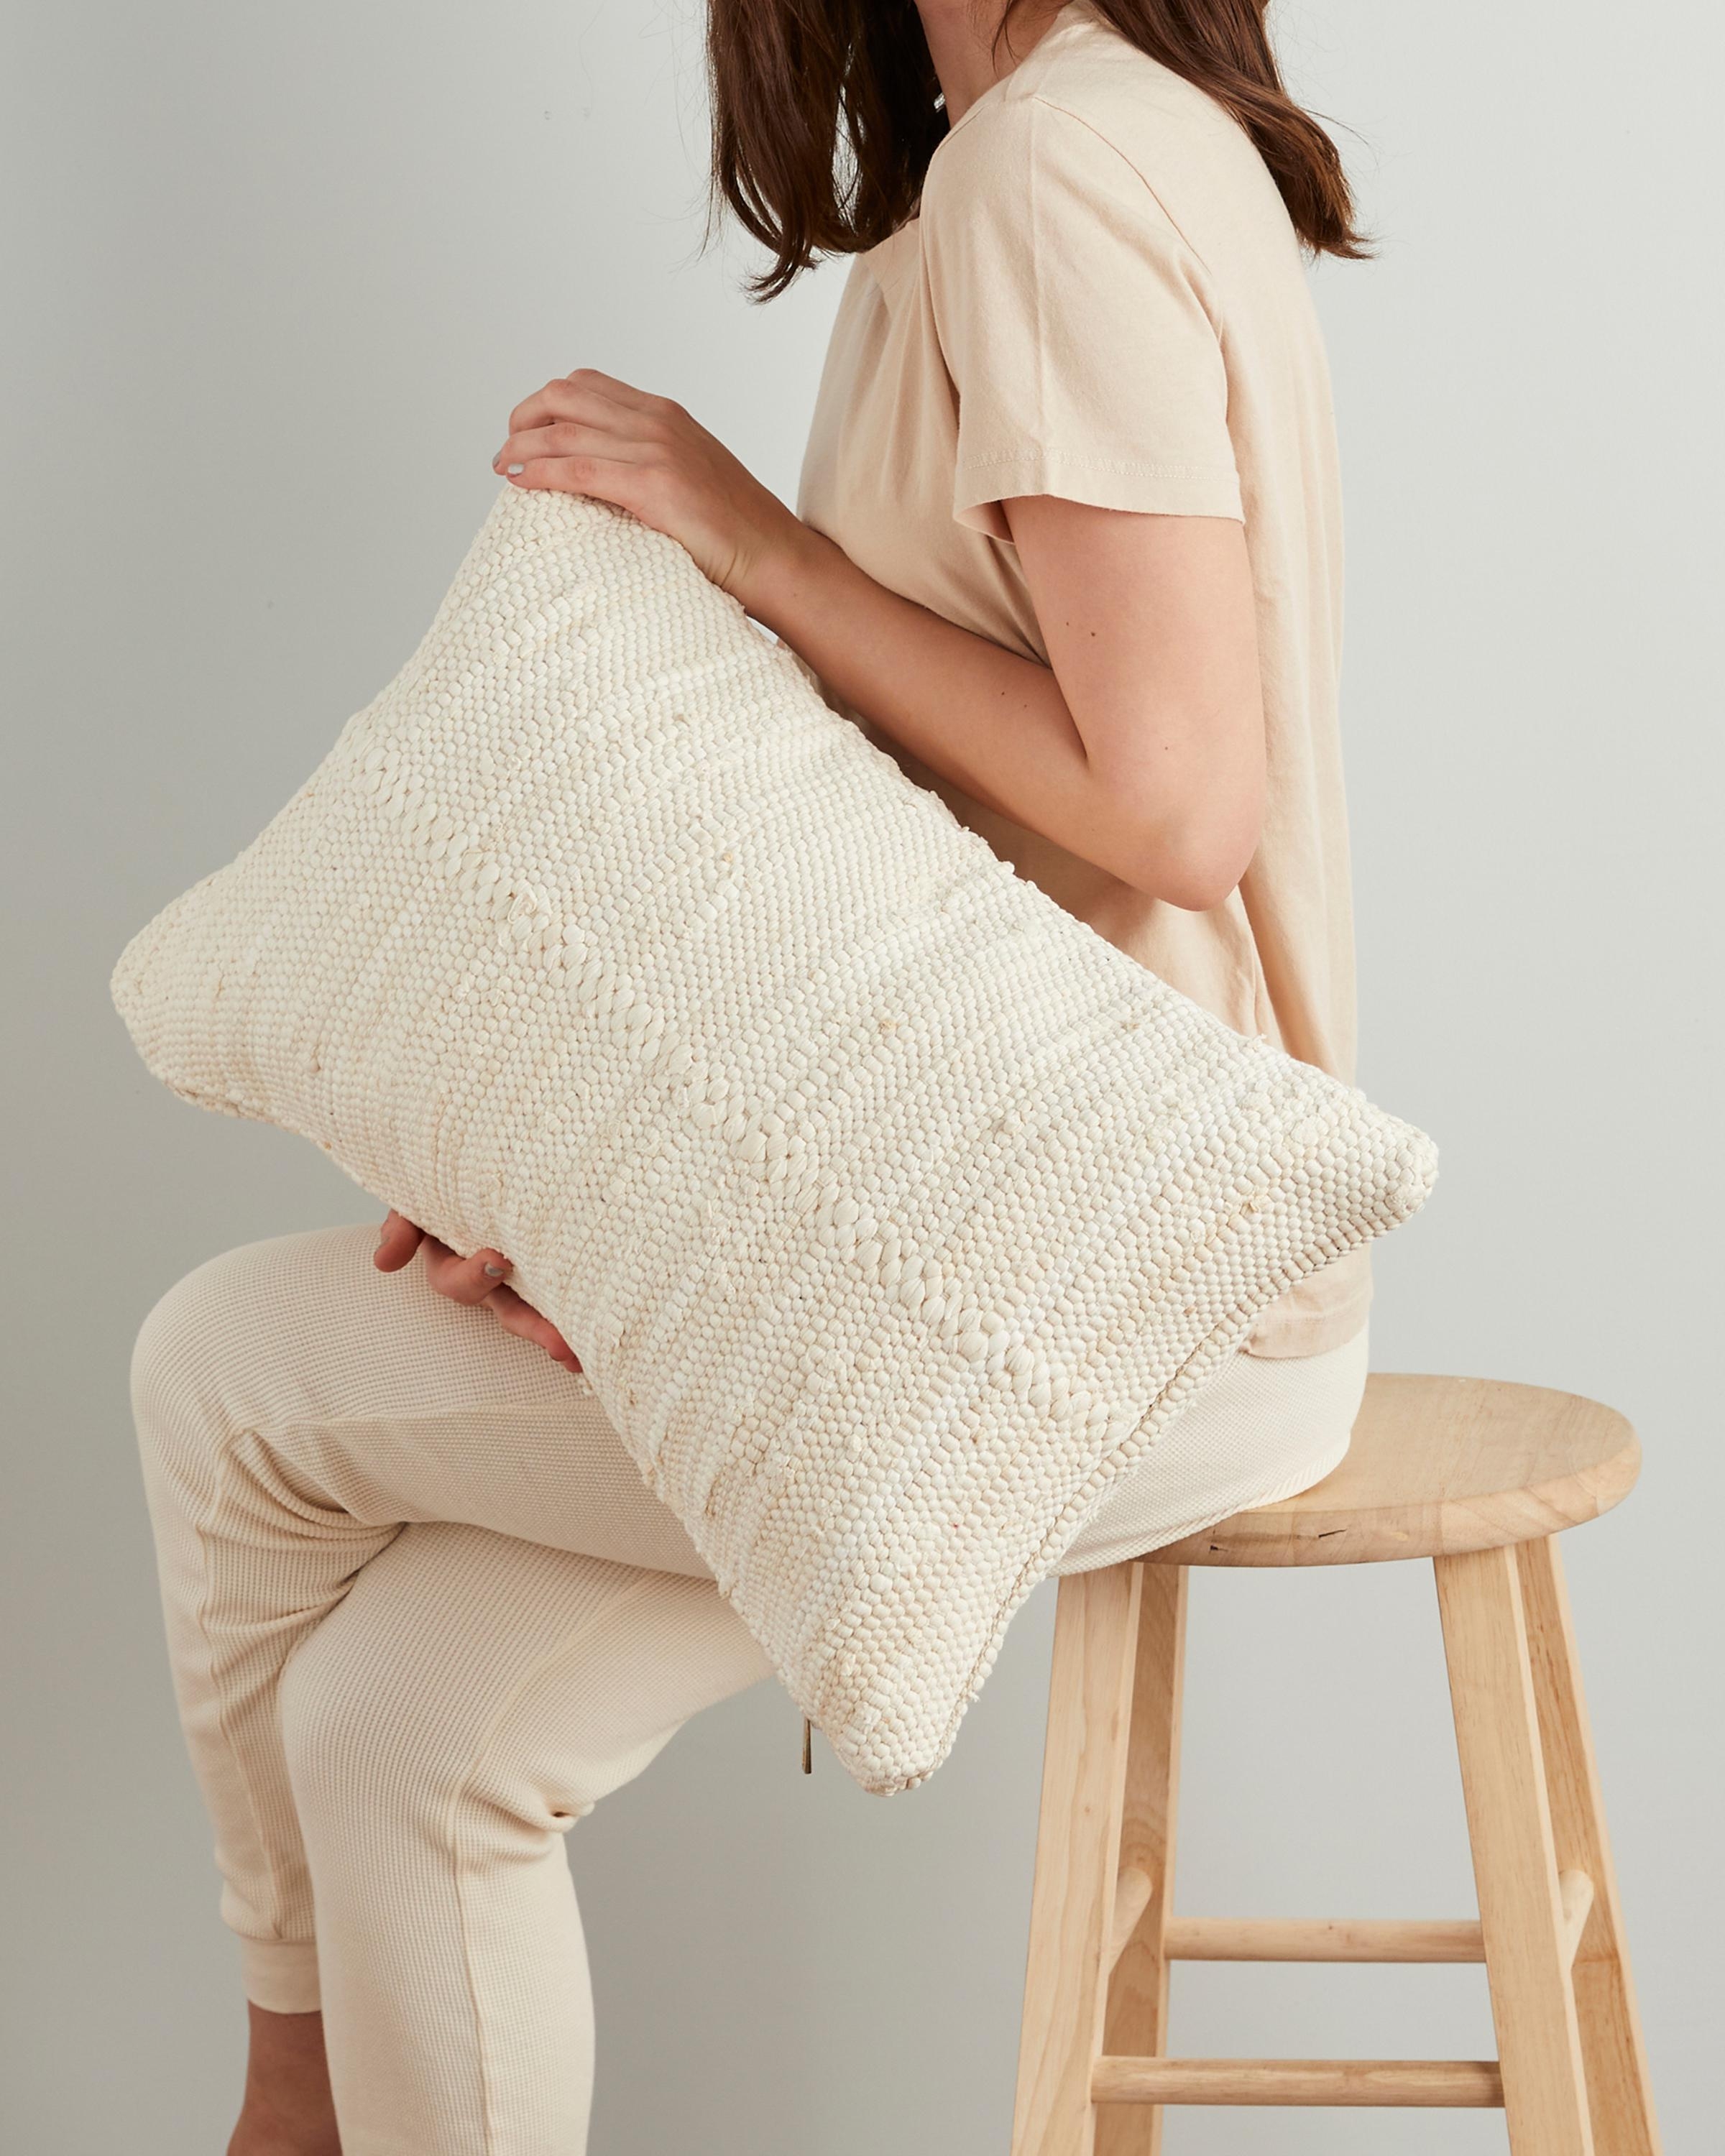 Chindi Lumbar Pillow Cover, Cream, 24" x 14" w/insert - Image 1